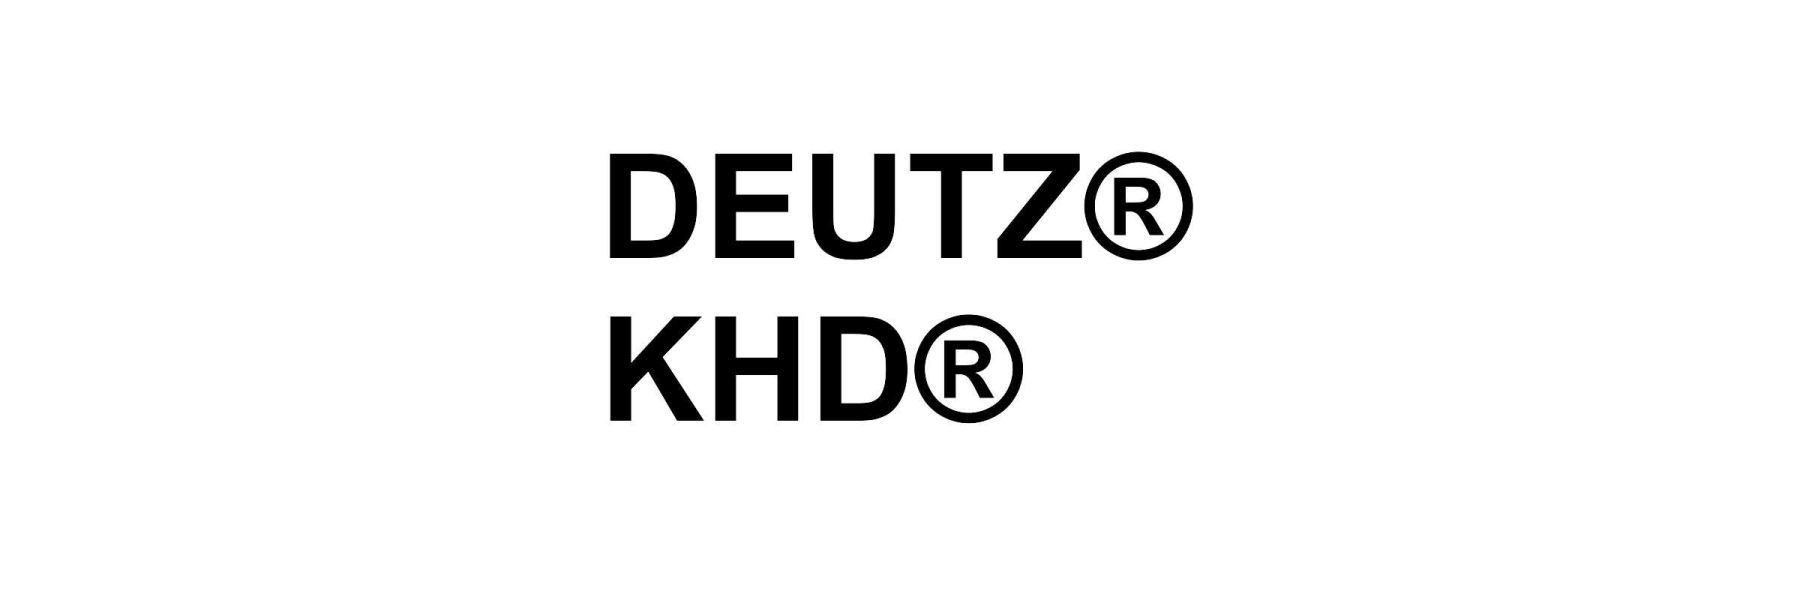  Deutz ist ein registrierter Markenname von der...